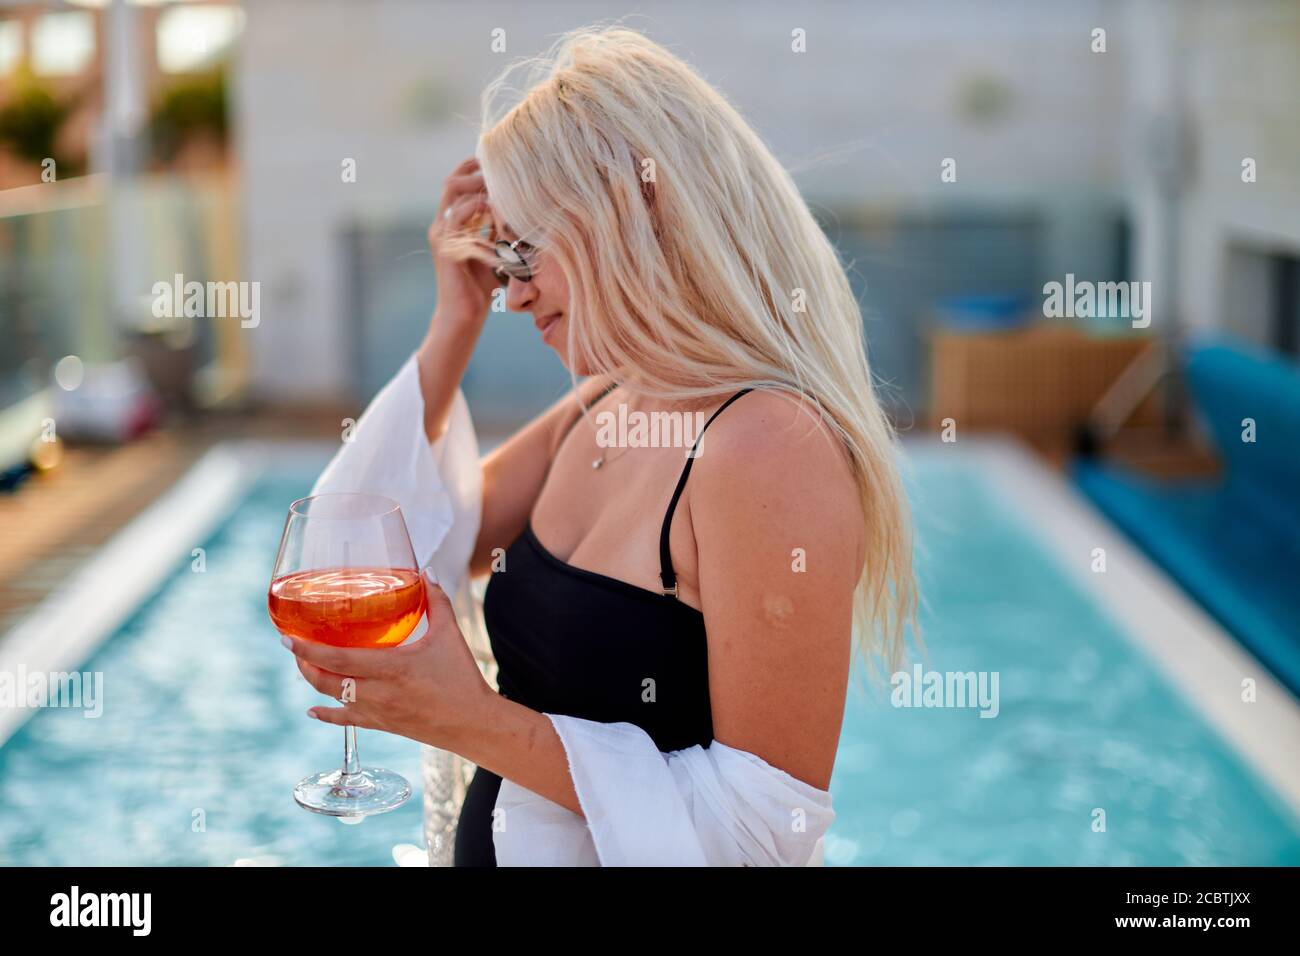 Bella, bionda viaggiatore donna in abito bianco spiaggia sta sorseggiando un cocktail in un bar sulla spiaggia durante il periodo estivo Foto Stock